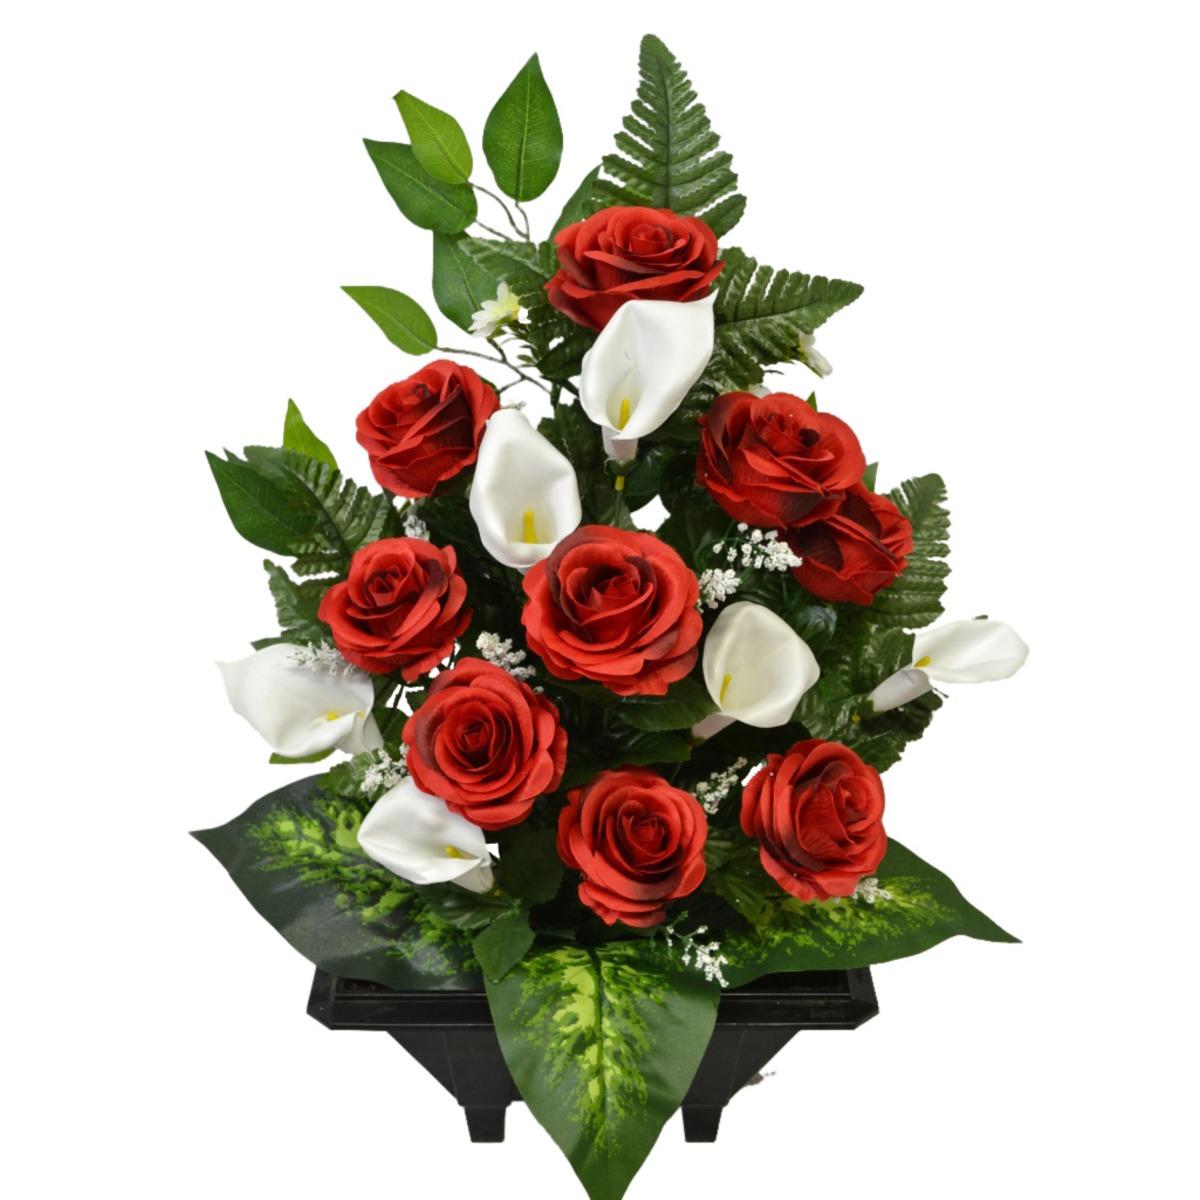 Jardinière de roses + arums + marguerites + ficus - 30 x H 60 cm - Différents modèles